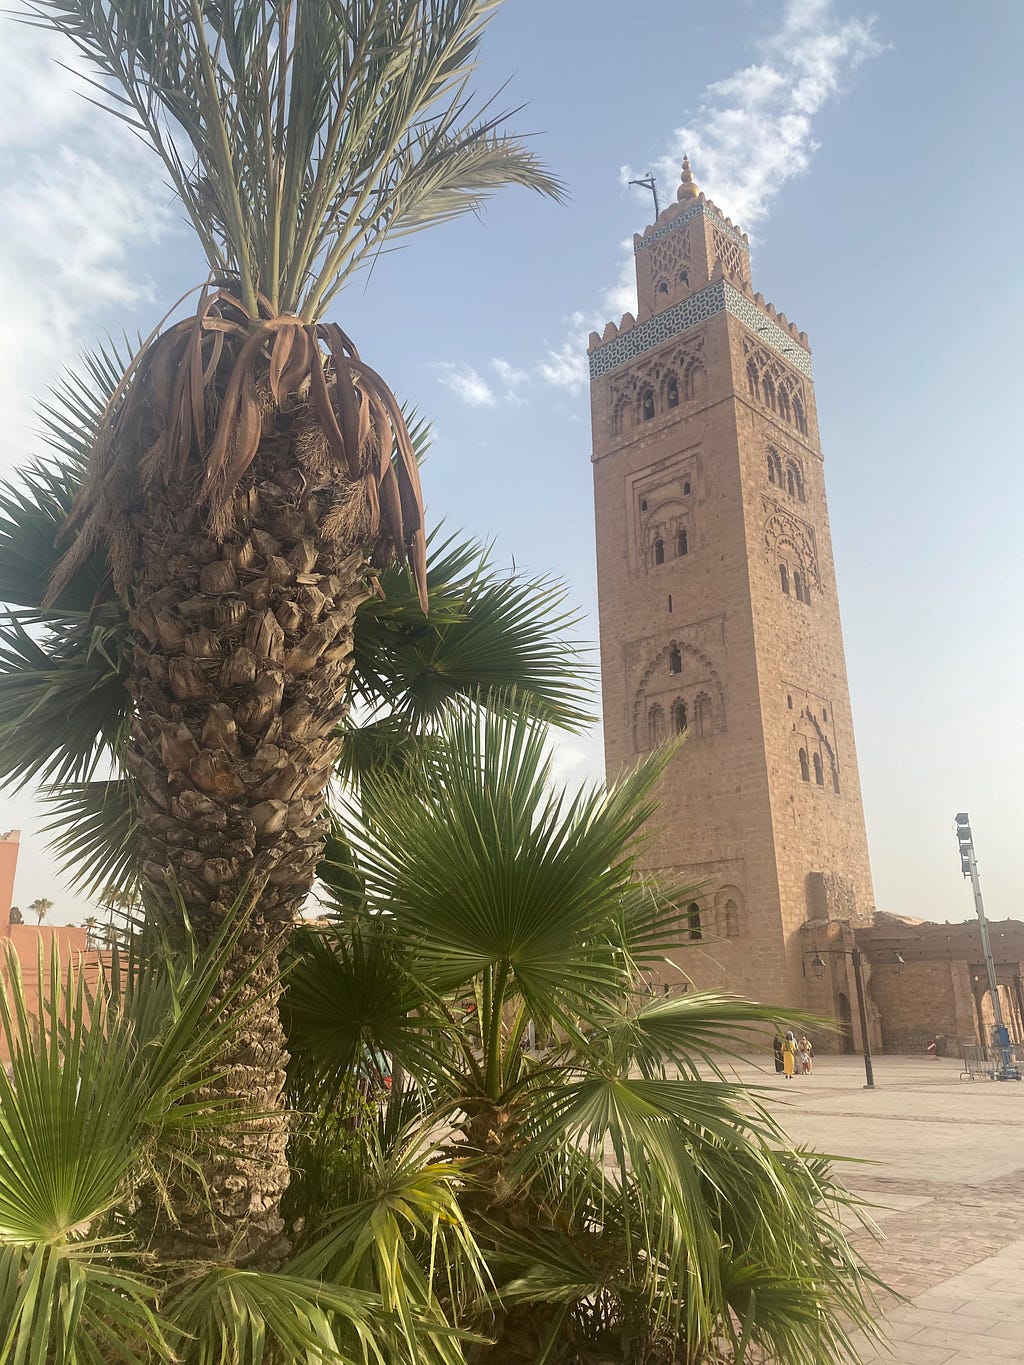 Mes jours à Marrakech étaient centrés au Kasbah — un lieu où, en antiquité, il y avait 4 tours désignées chacun à héberger une famille